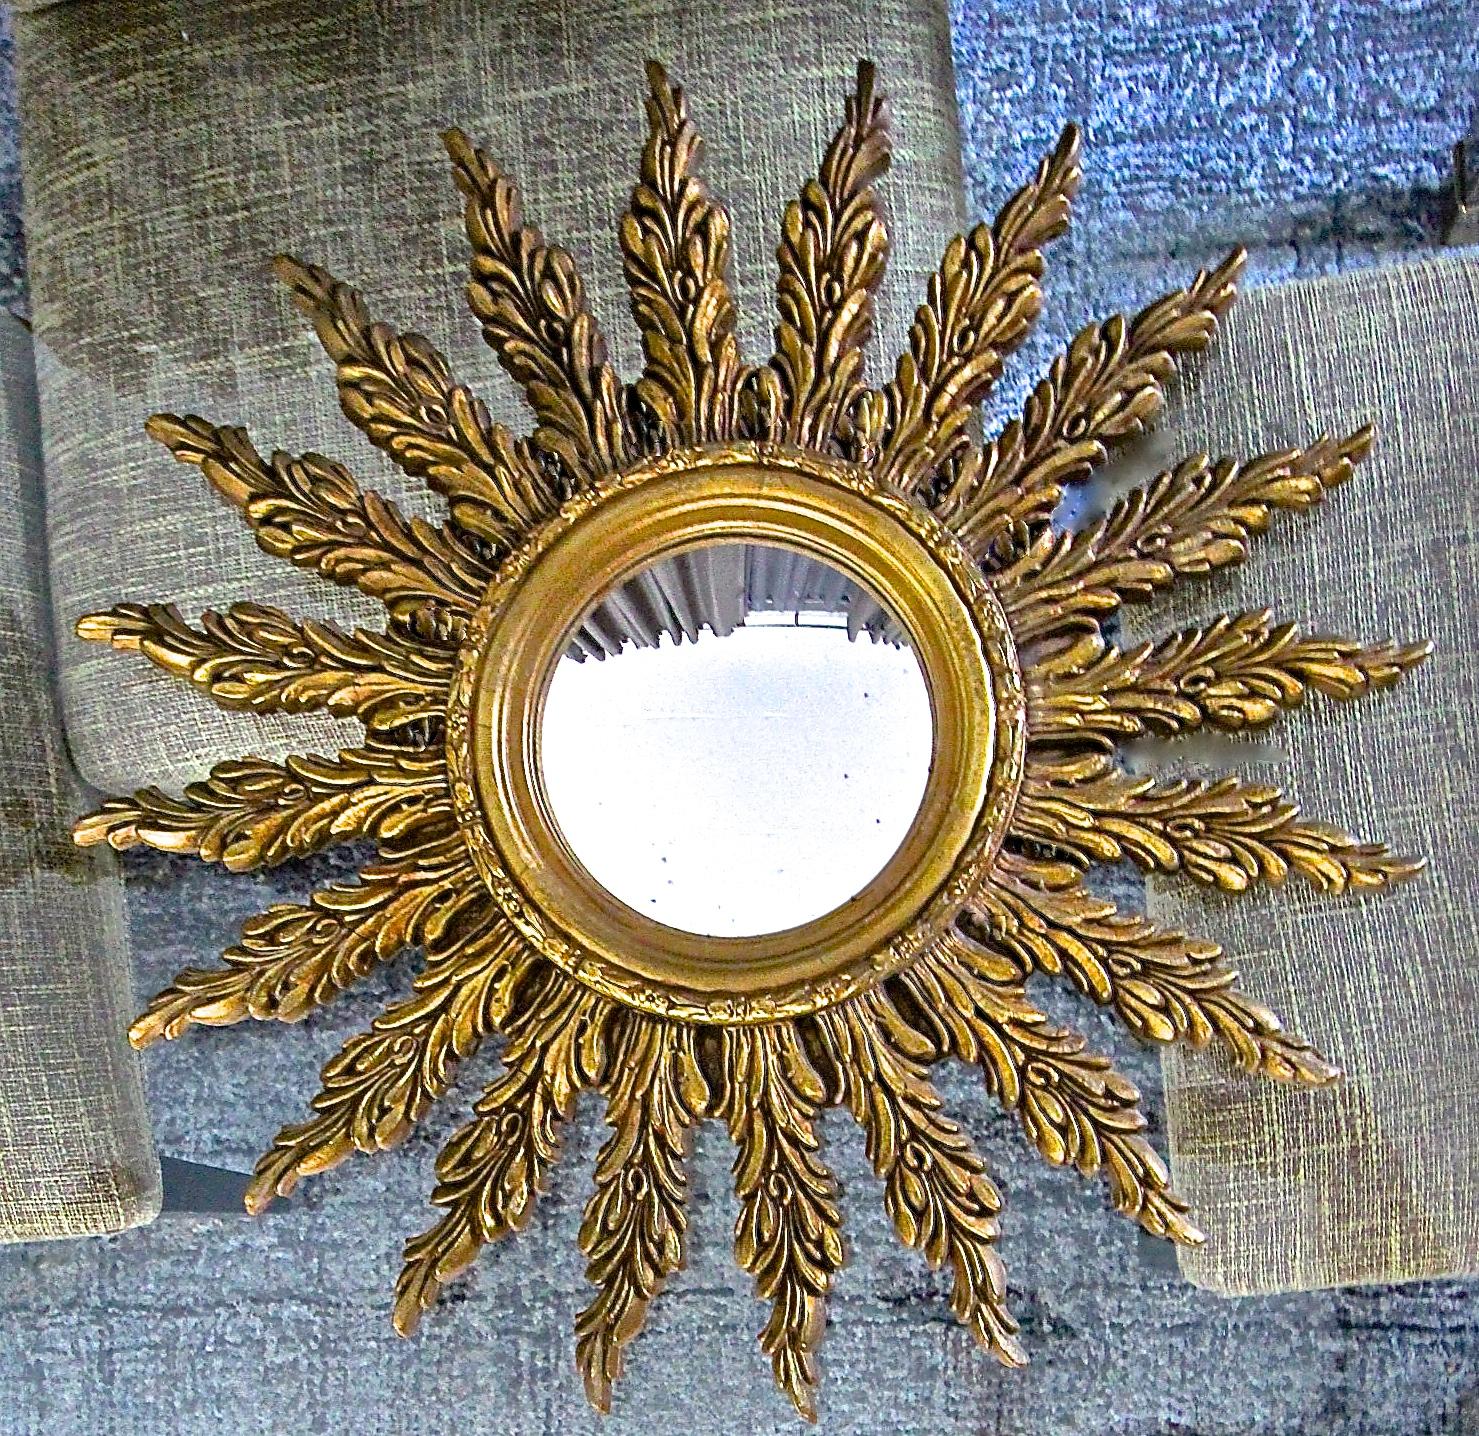 Miroir mural rond français en bois doré avec miroir convexe vieilli. Le miroir mural est une combinaison de composition et de bois. Diamètre total du miroir 25,5